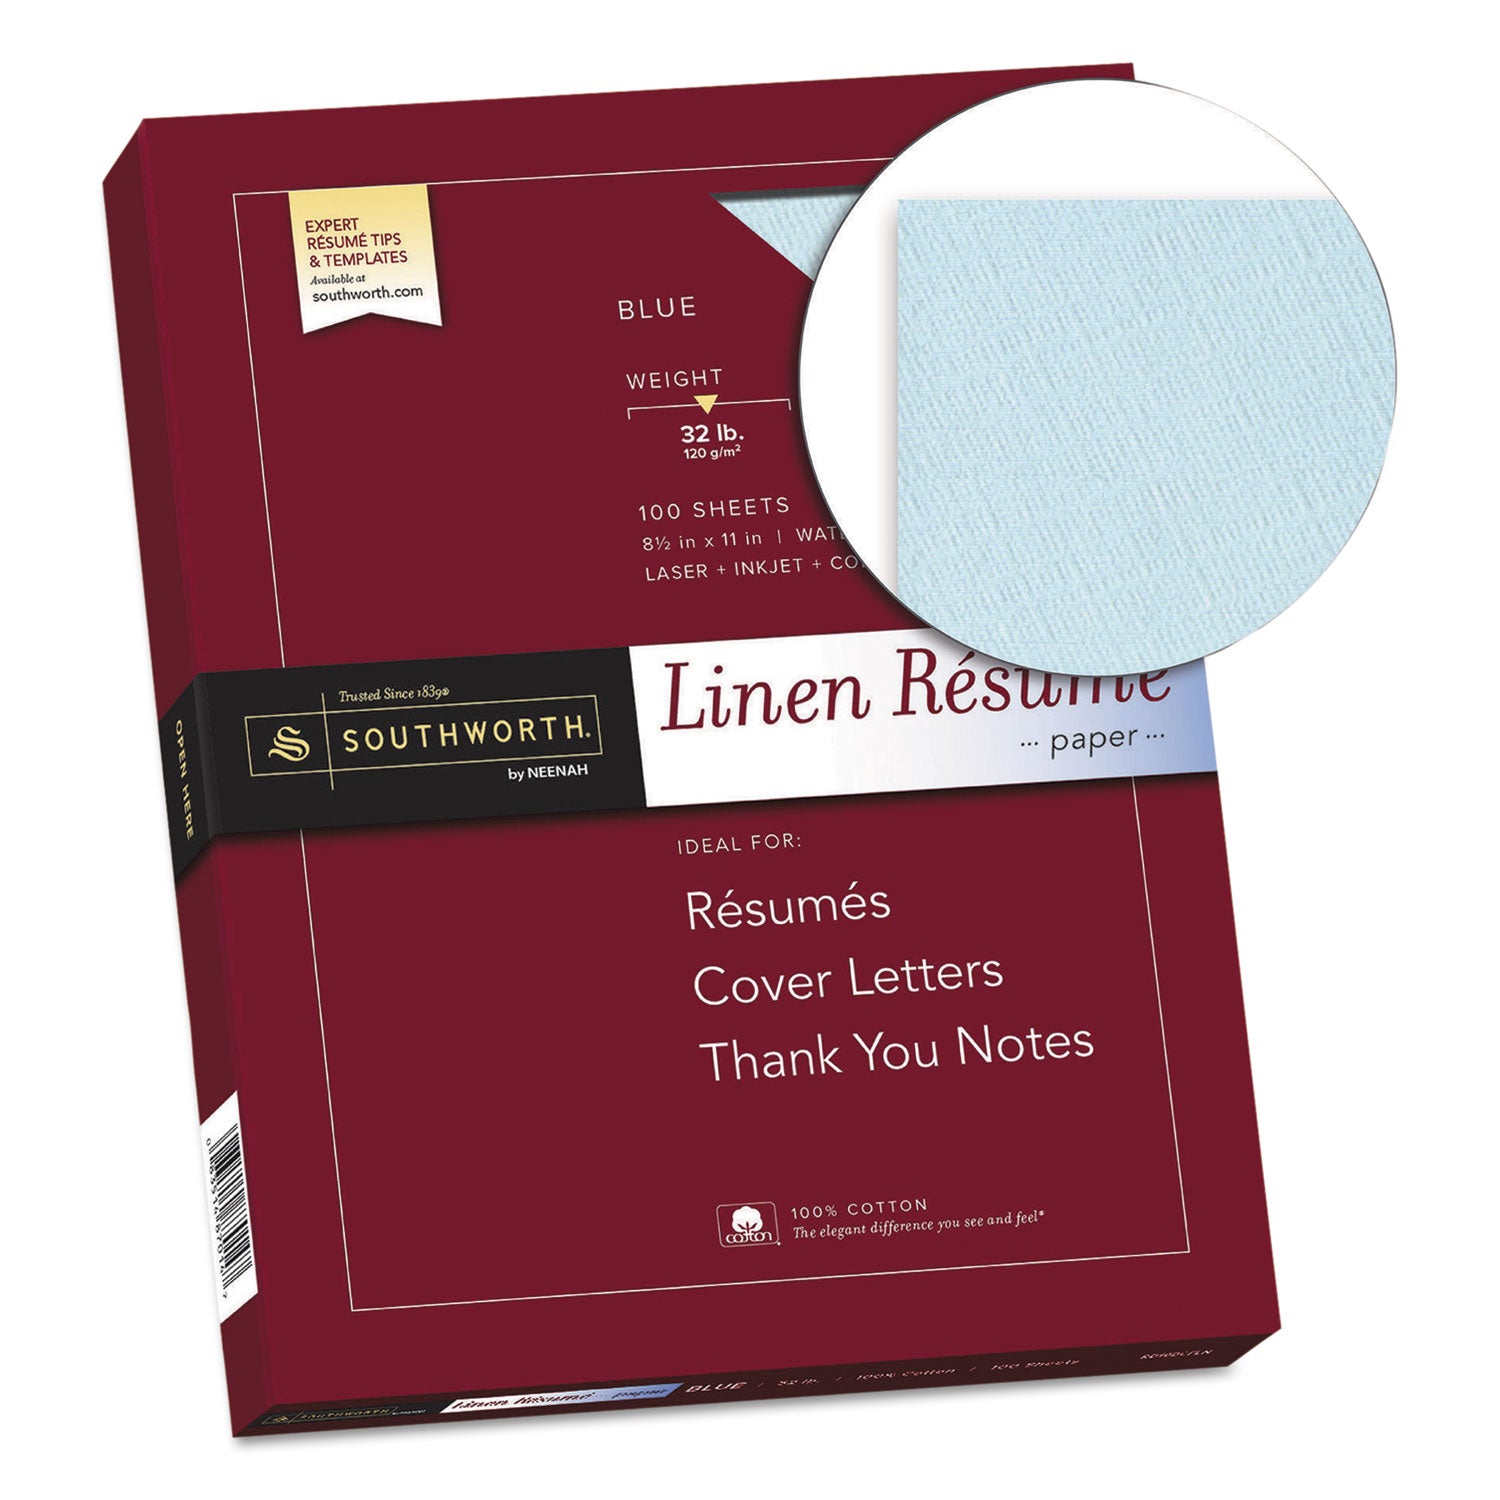 100% Cotton Premium Weight Linen Resume Paper, 32 lb Bond Weight, 8.5 x 11, Blue, 100/Pack - 